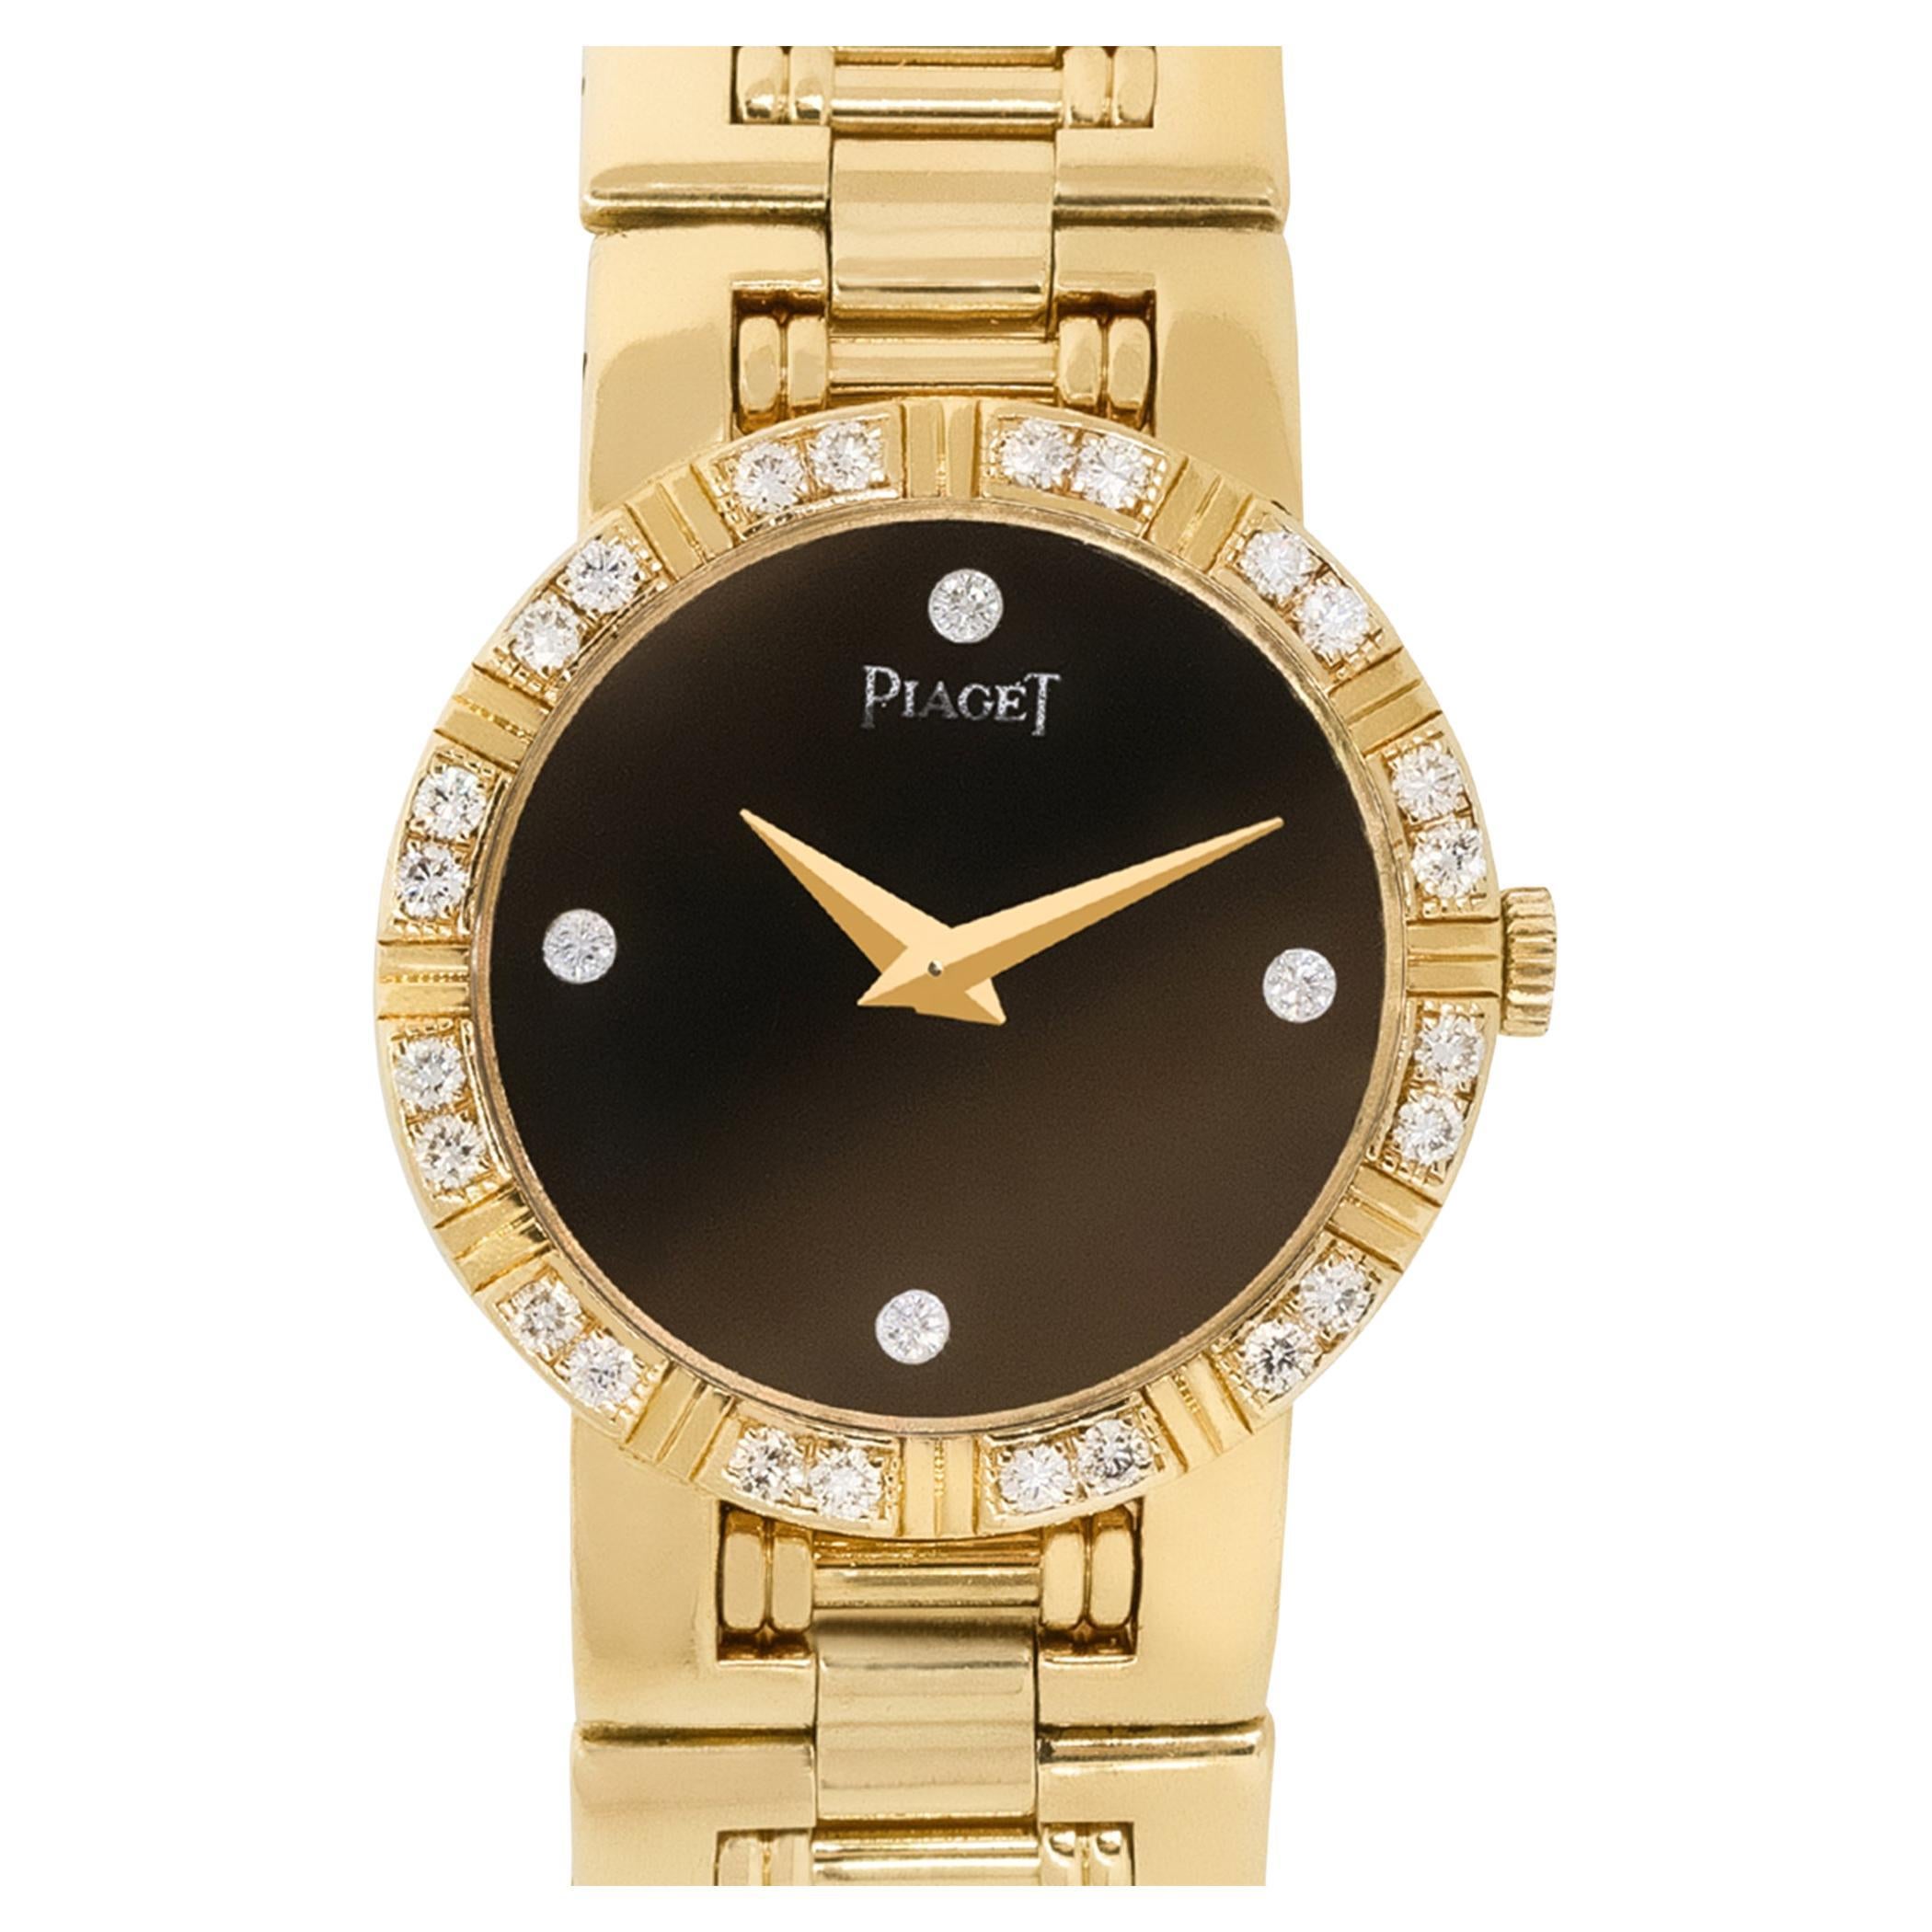 Piaget 80564 Montre pour femme à cadran en or 18 carats et diamants noirs, en stock